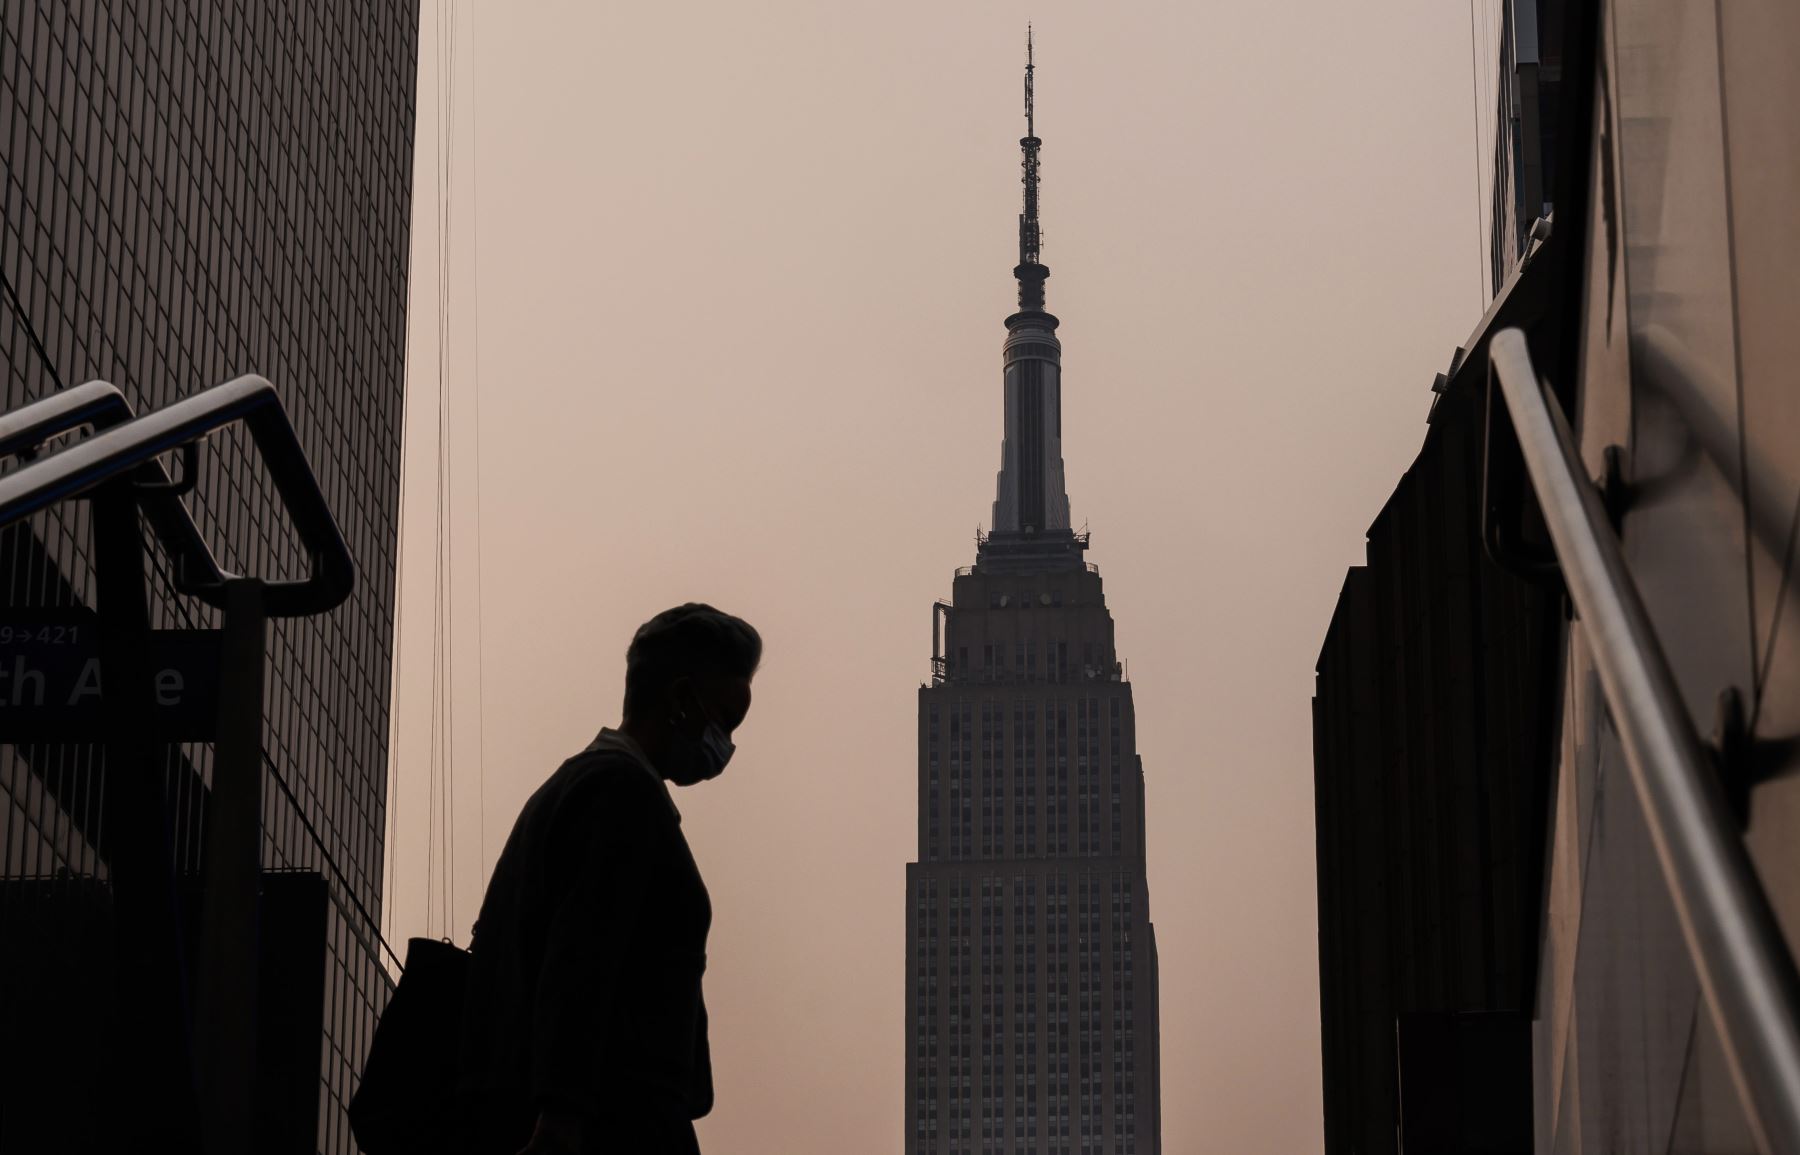 El Empire State Building se encuentra en el fondo mientras una persona con una máscara camina en una mañana brumosa debido al humo de los incendios forestales que arden en Canadá, en Nueva York, EE. UU.
Foto: EFE